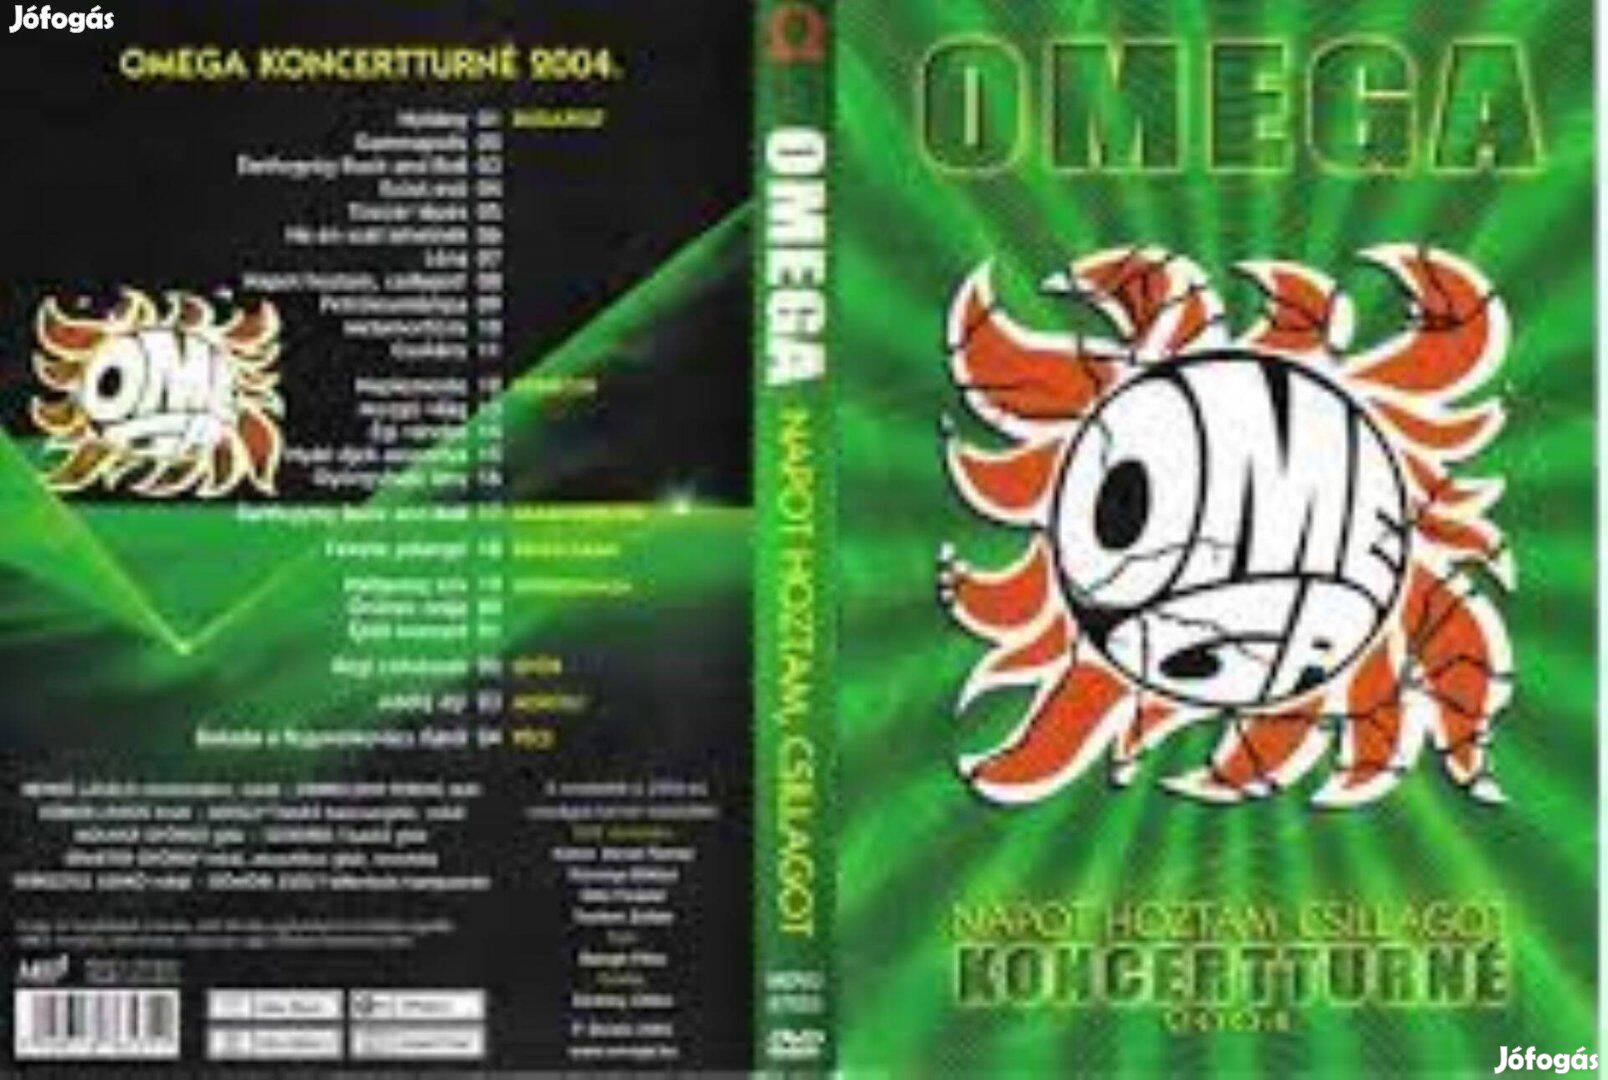 Keresek: Omega napothoztam csillagot 2004